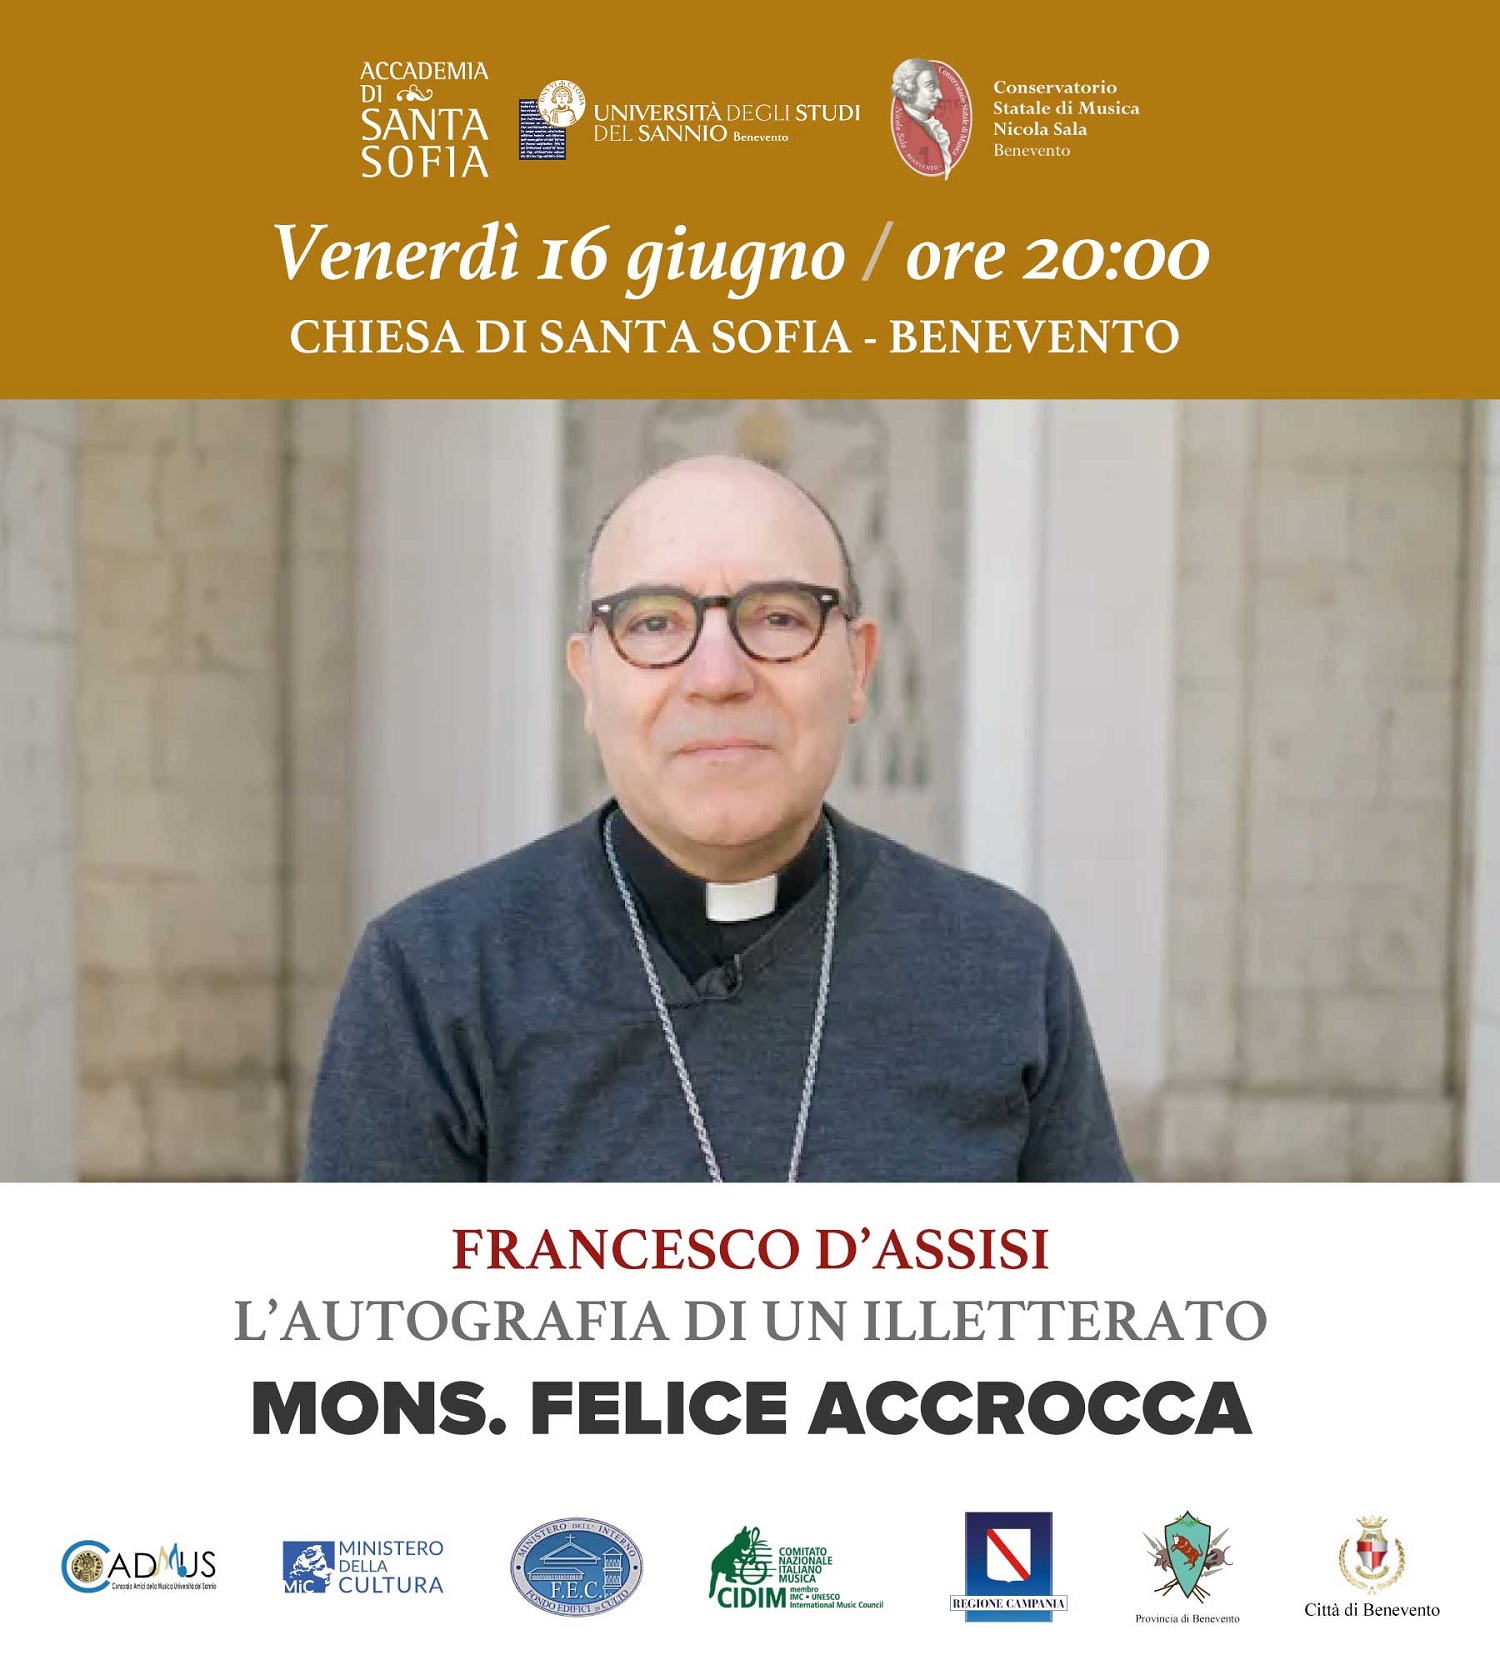 Accademia Santa Sofia: il 16 Giugno l’atteso incontro con Mons. Felice Accrocca su “Francesco d’Assisi”